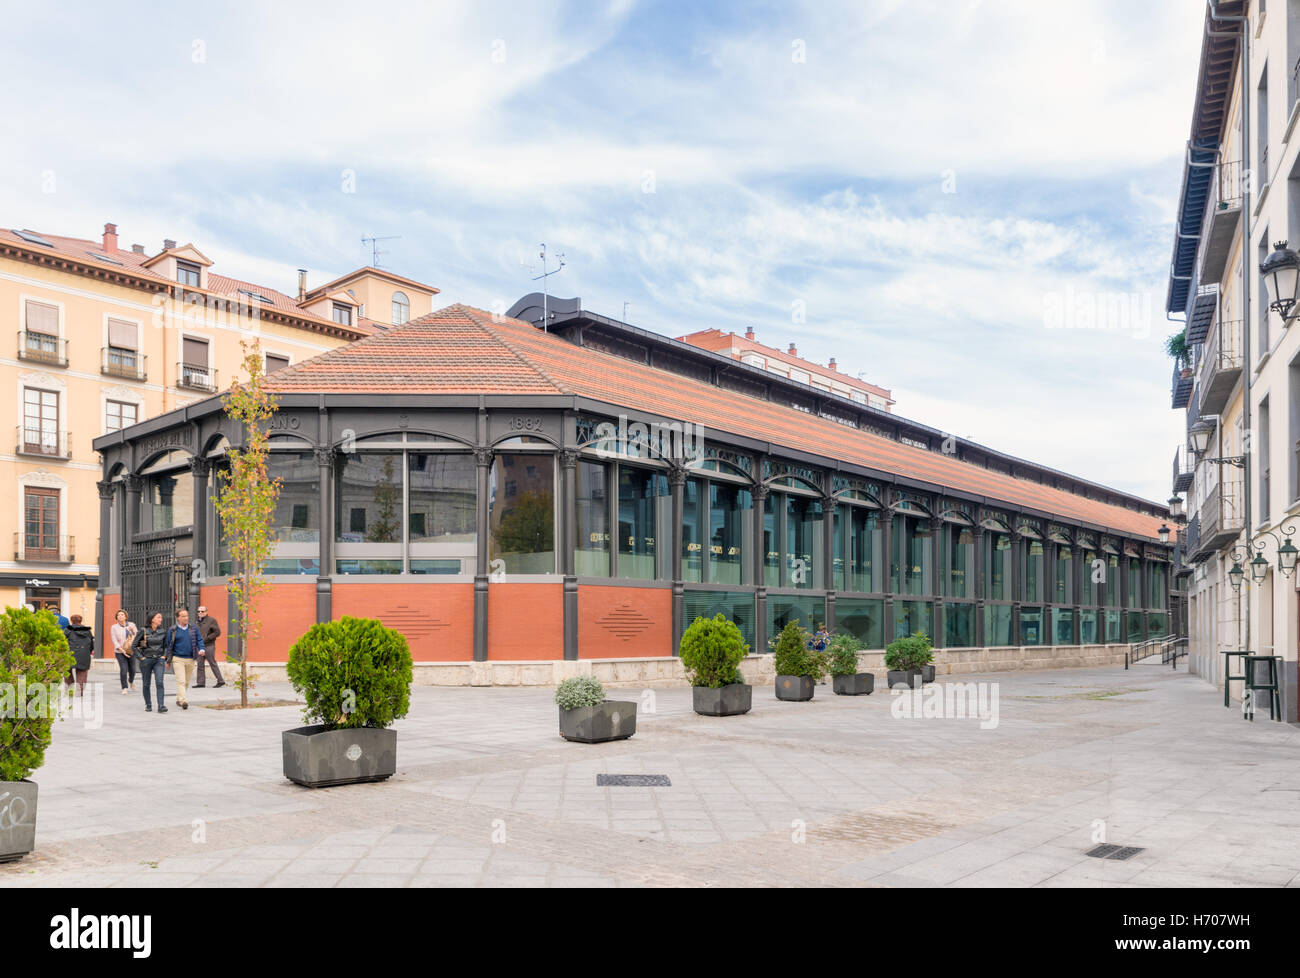 VALLADOLID, España - 1 de noviembre de 2016: Mercado del Val (Val Mercado) , es un ejemplo de la arquitectura del hierro. Se encuentra en la pl Foto de stock